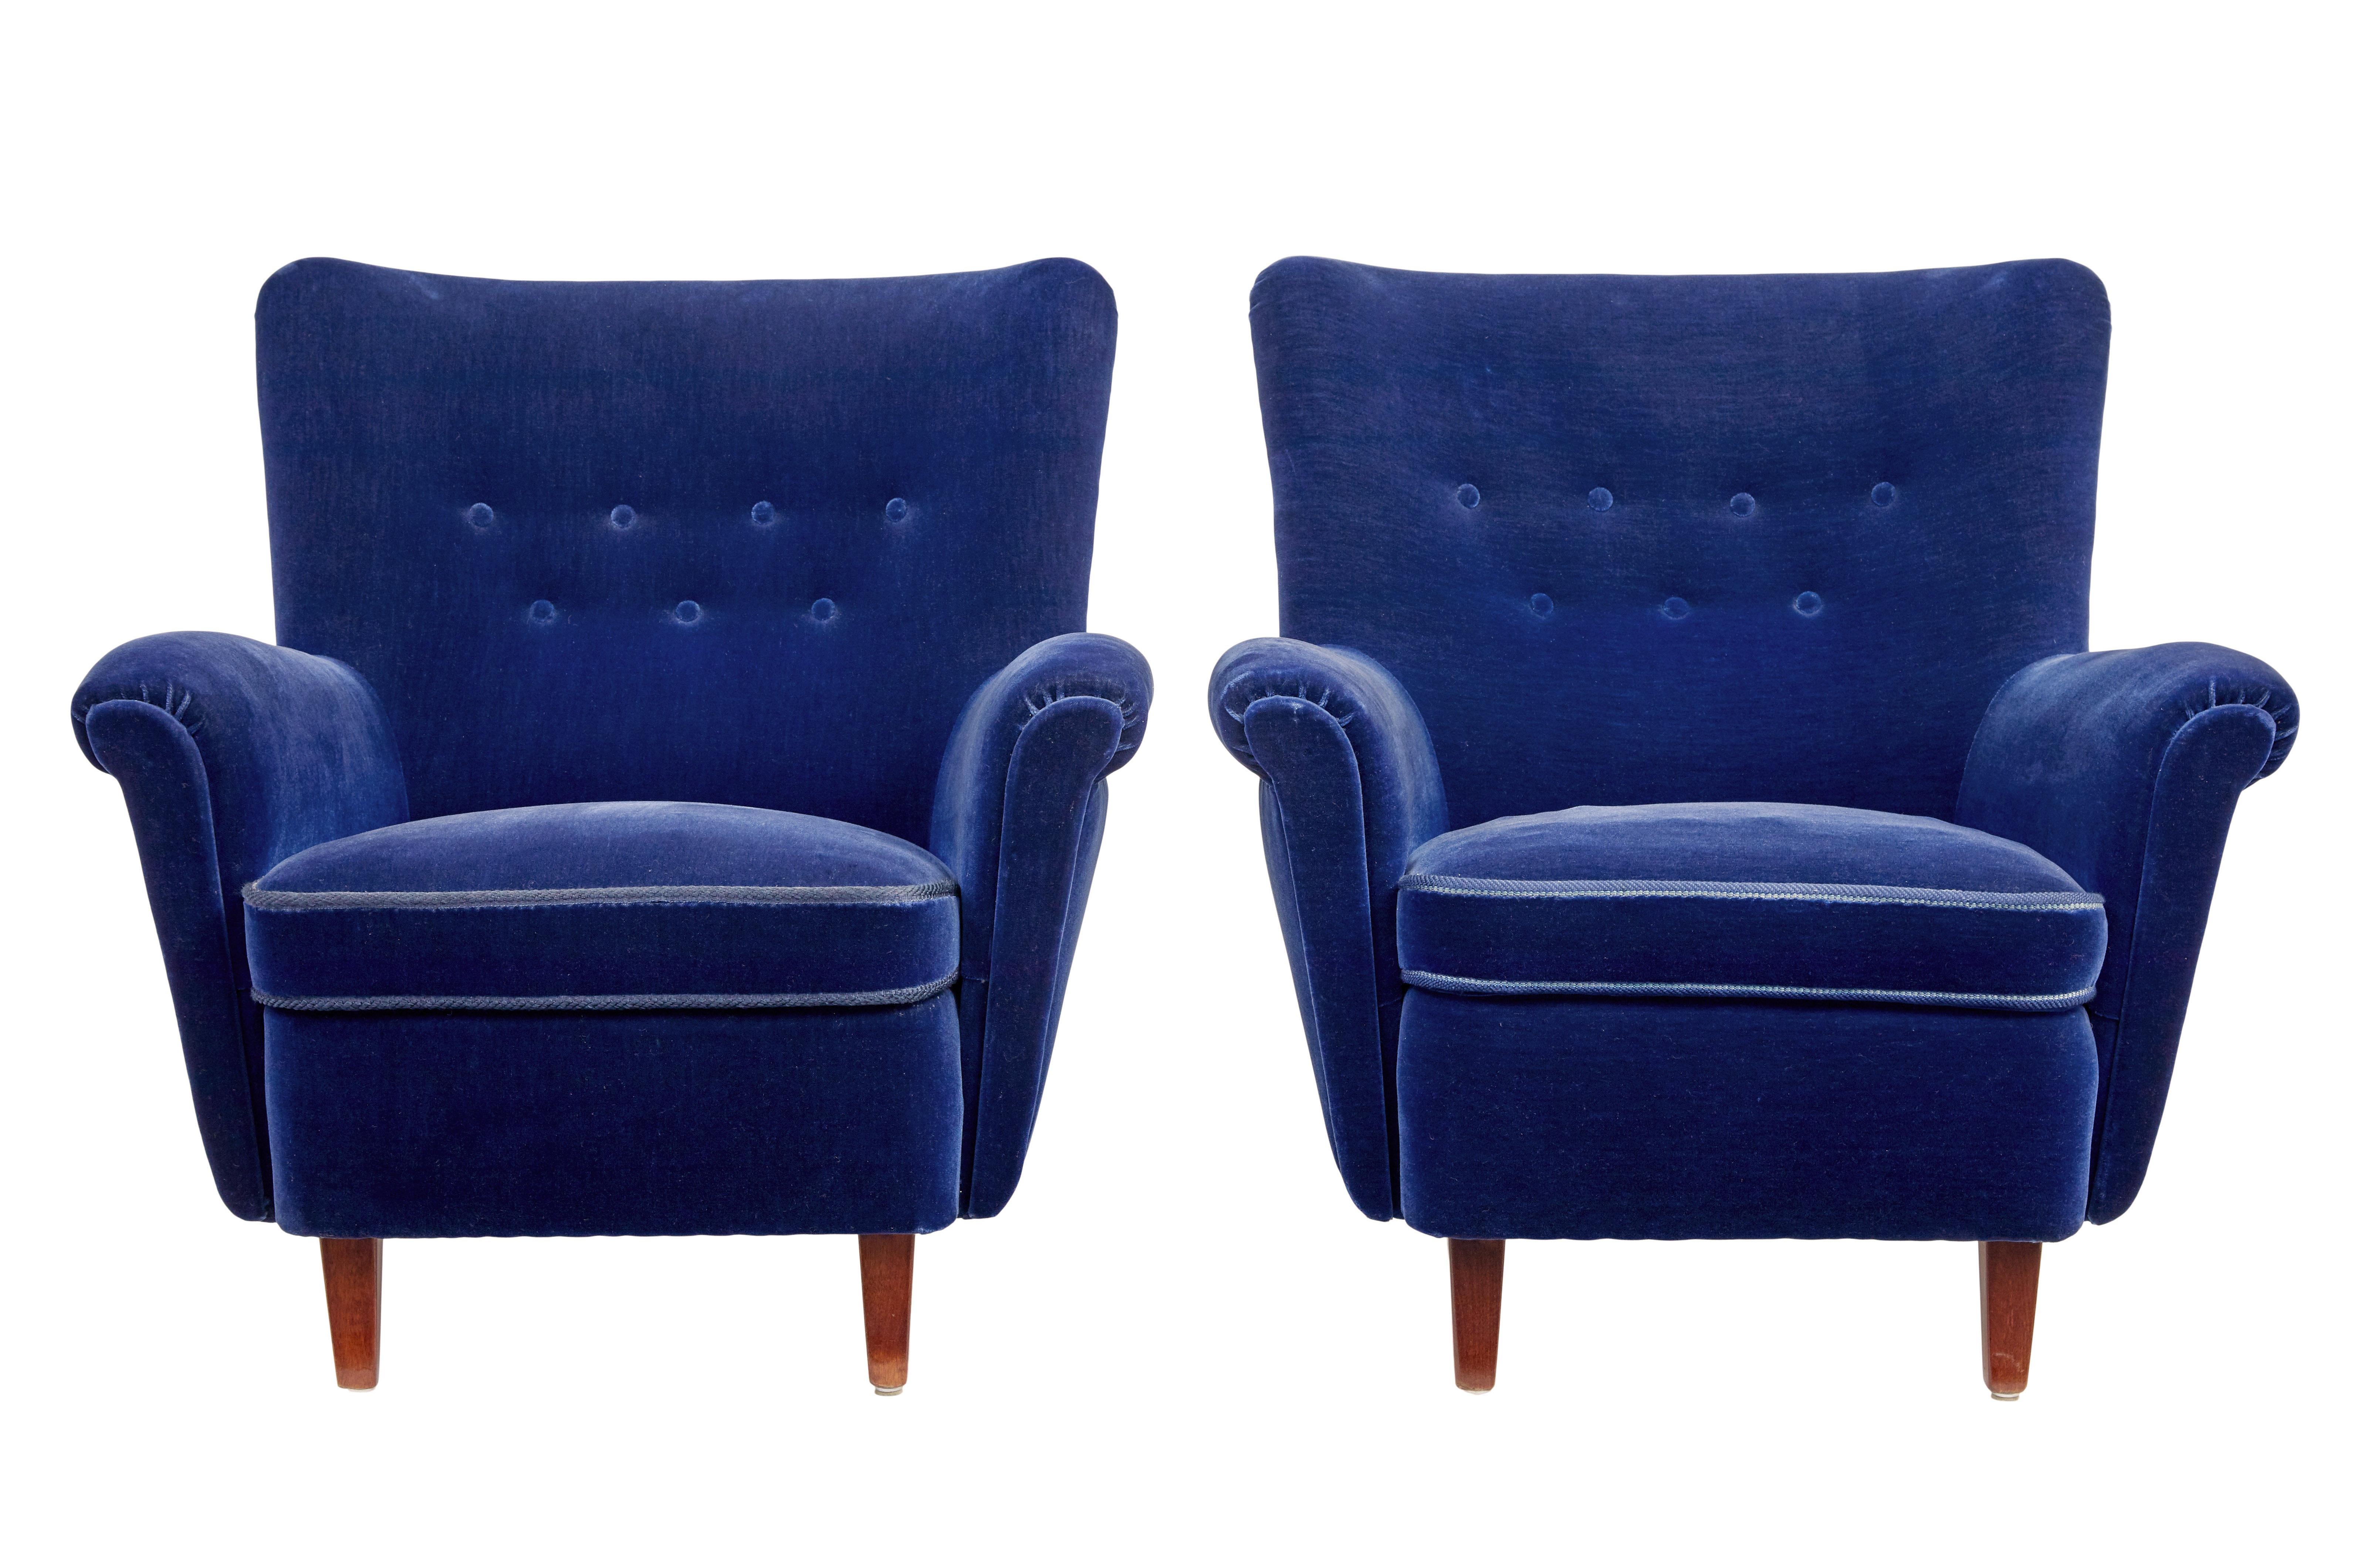 Nous avons le plaisir de vous présenter ce superbe ensemble de 3 pièces datant de 1950.

La suite comprend une paire de fauteuils et un canapé assorti.  Richement rembourré dans un tissu velours bleu profond.

Canapé 2 places à dossier et forme